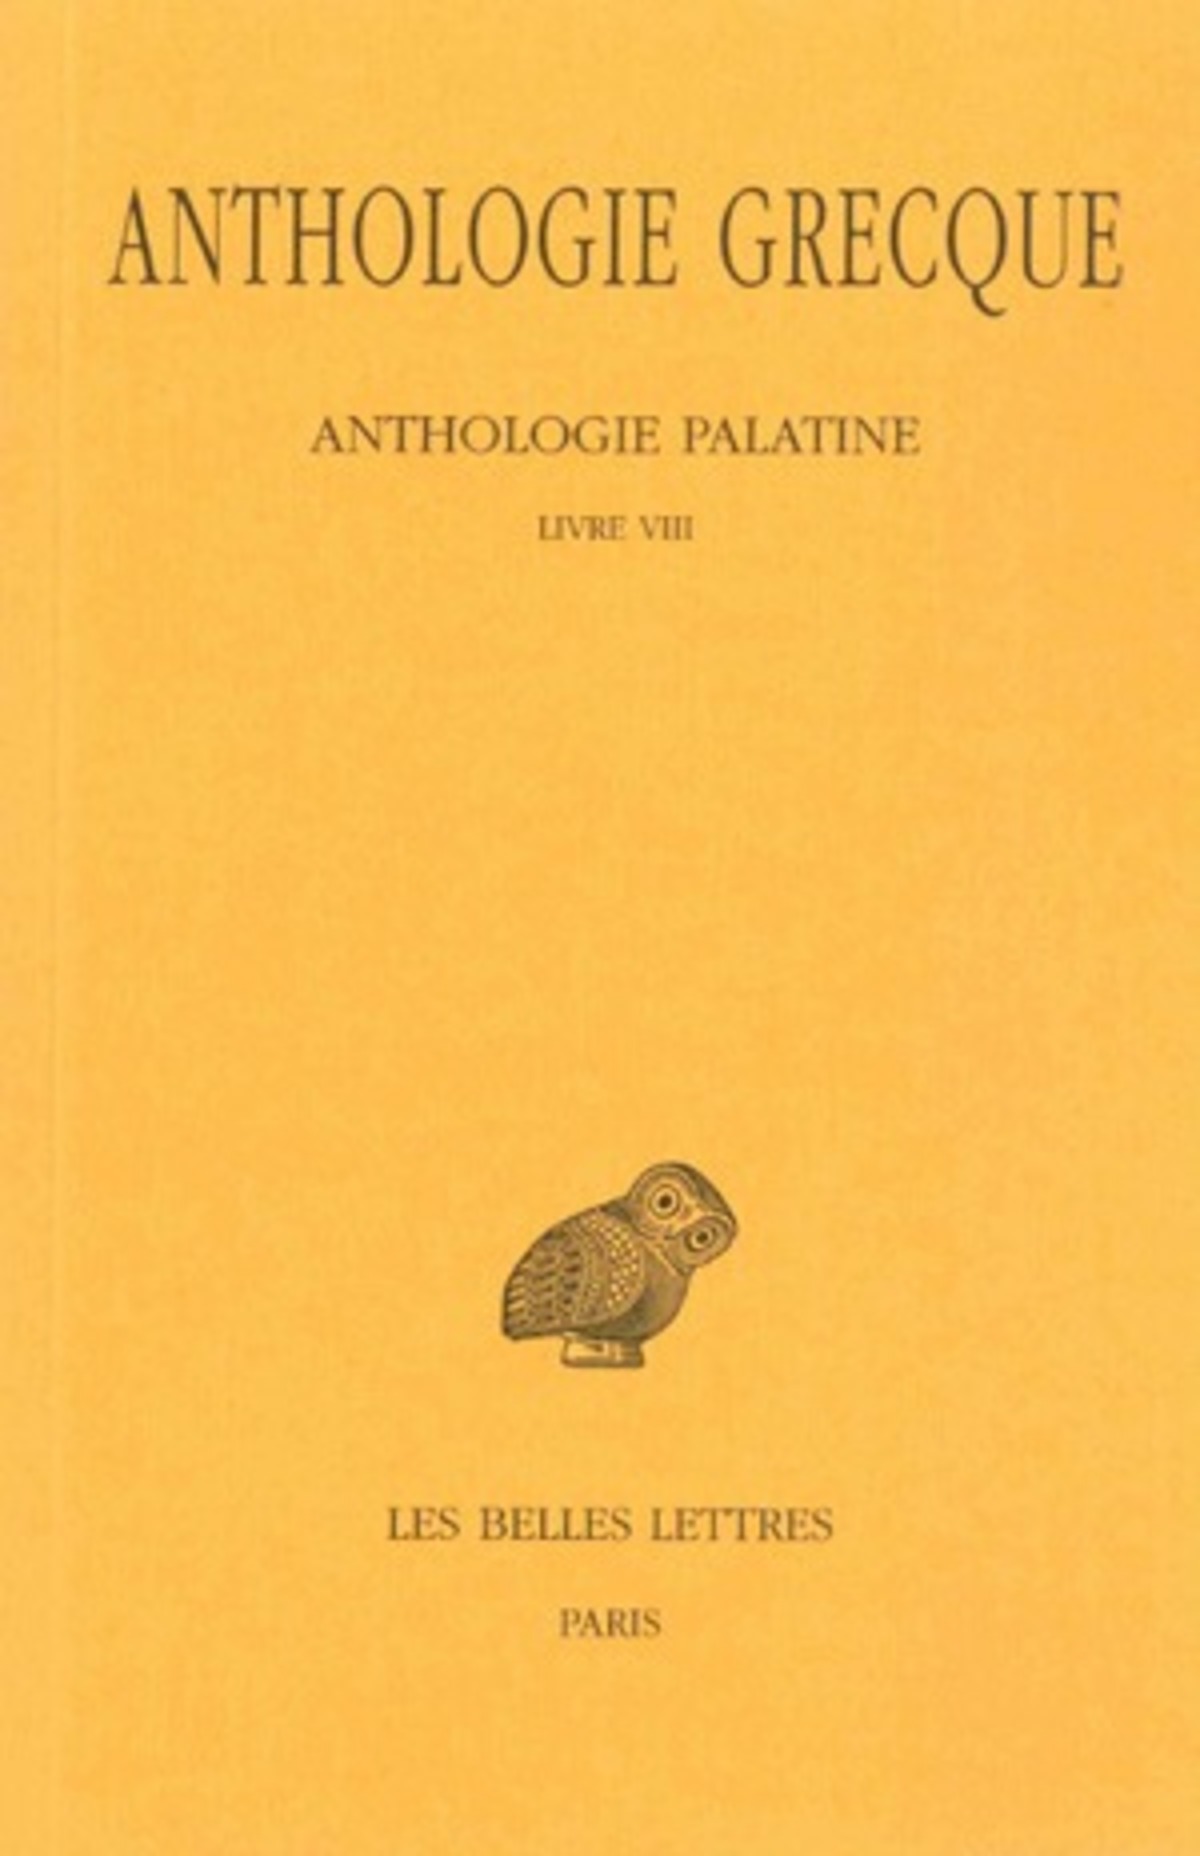 Anthologie grecque. Tome VI: Anthologie palatine, Livre VIII, Épigrammes de Saint Grégoire le Théologien